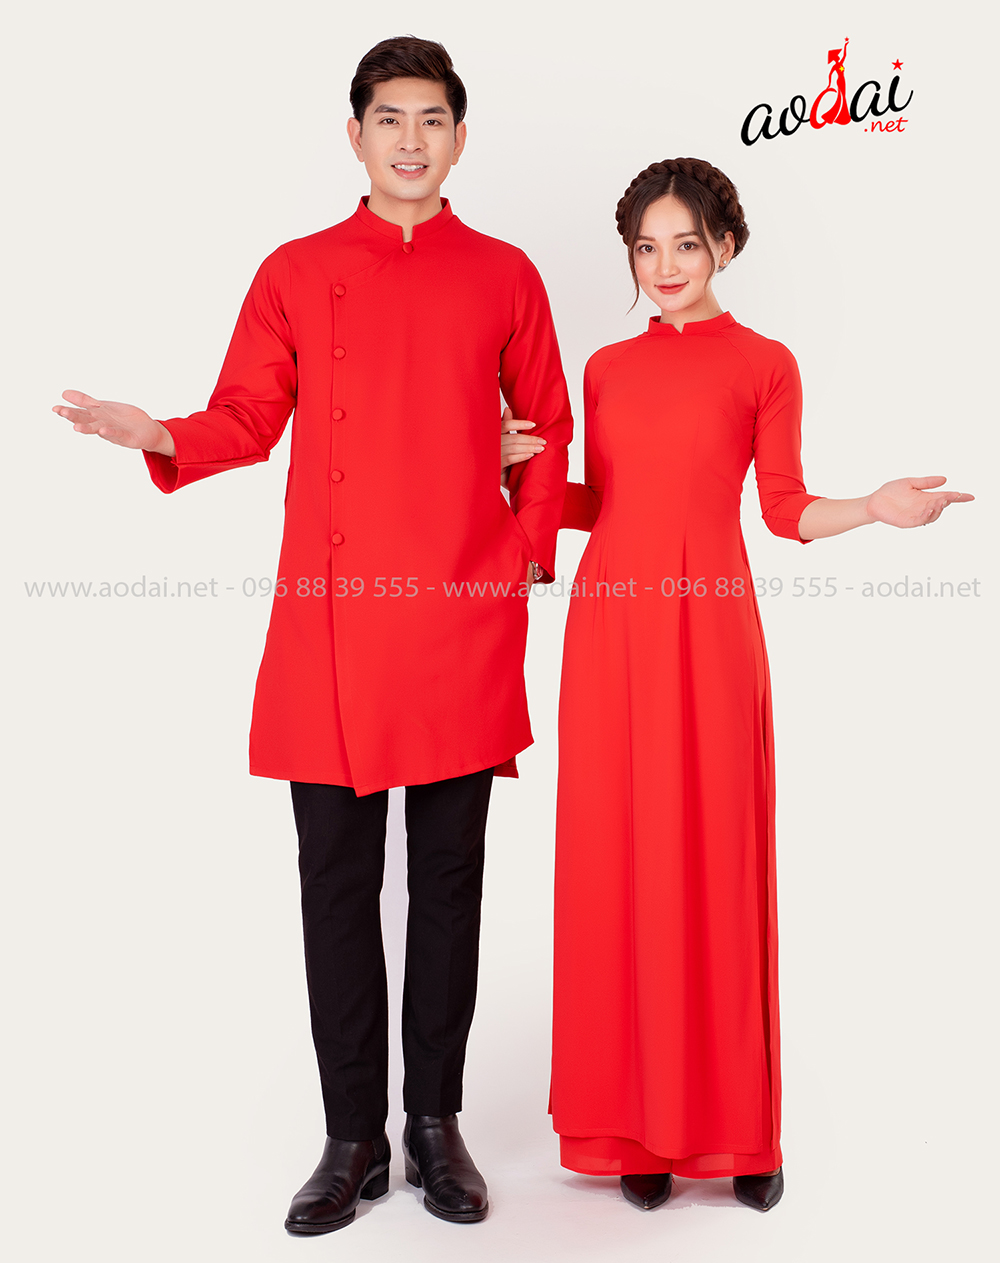 Áo dài màu đỏ cho nam và nữ